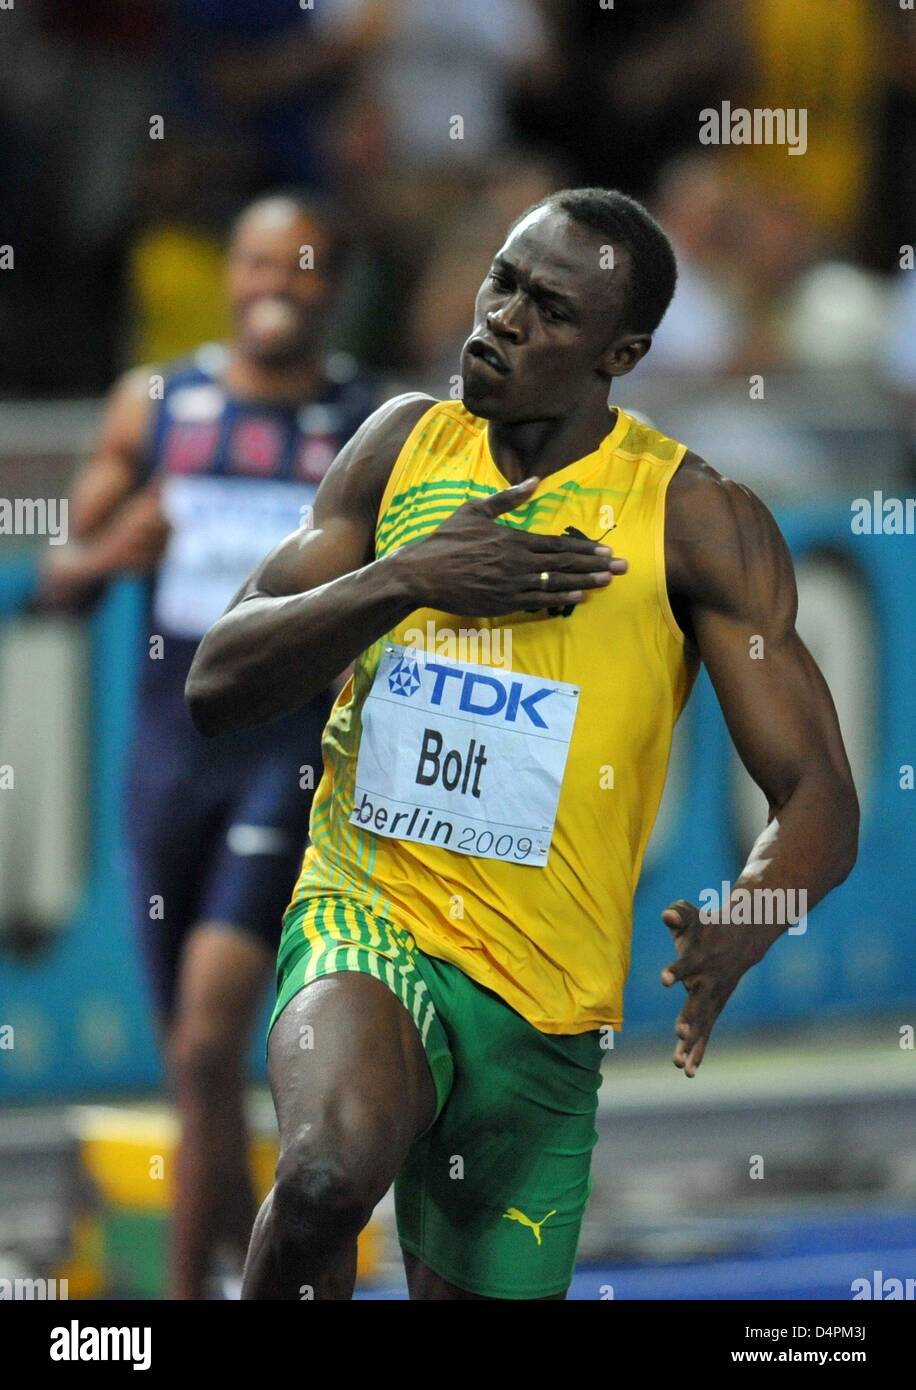 Jamaikaner Usain Bolt gewinnt die Männer? s 100-m-final auf der 12. IAAF Leichtathletik WM in Berlin, Deutschland, 16. August 2009. Bolzen etabliert einen neuen Weltrekord von 9,58 Sekunden. Foto: BERND THISSEN Stockfoto